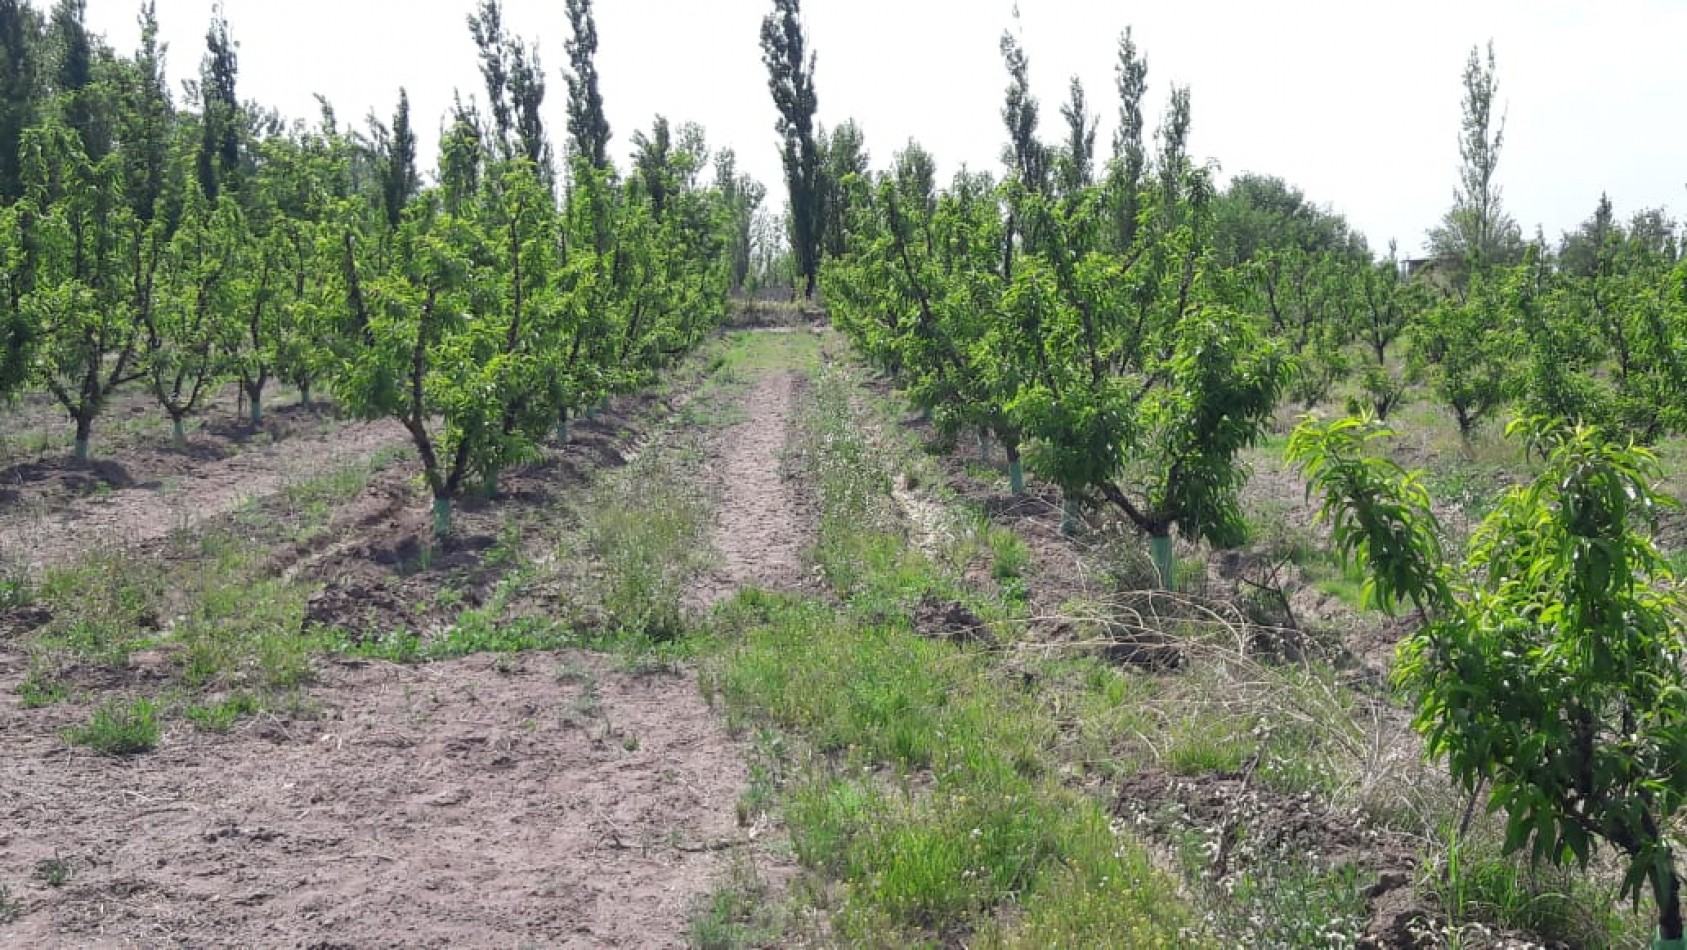 VENDO Finca de 8 hectareas en Las Aguaditas. Casa, frutales Ciruela D'agen,  Durazno, Uvas. San Rafael. Mendoza. 